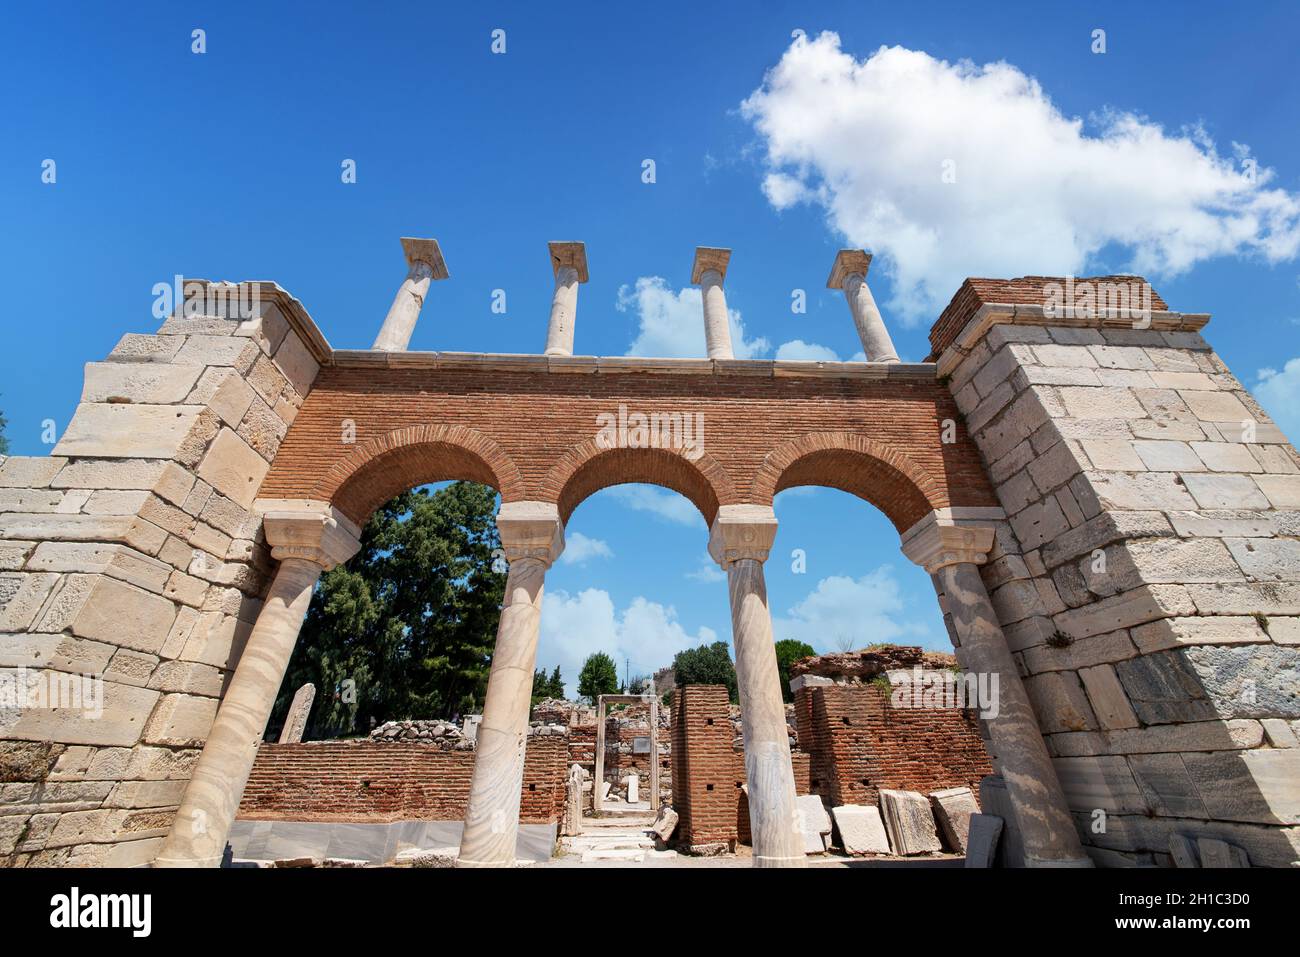 Ruinen der antiken Stadt Ephesus. Selcuk, Izmir, Türkei. Stockfoto